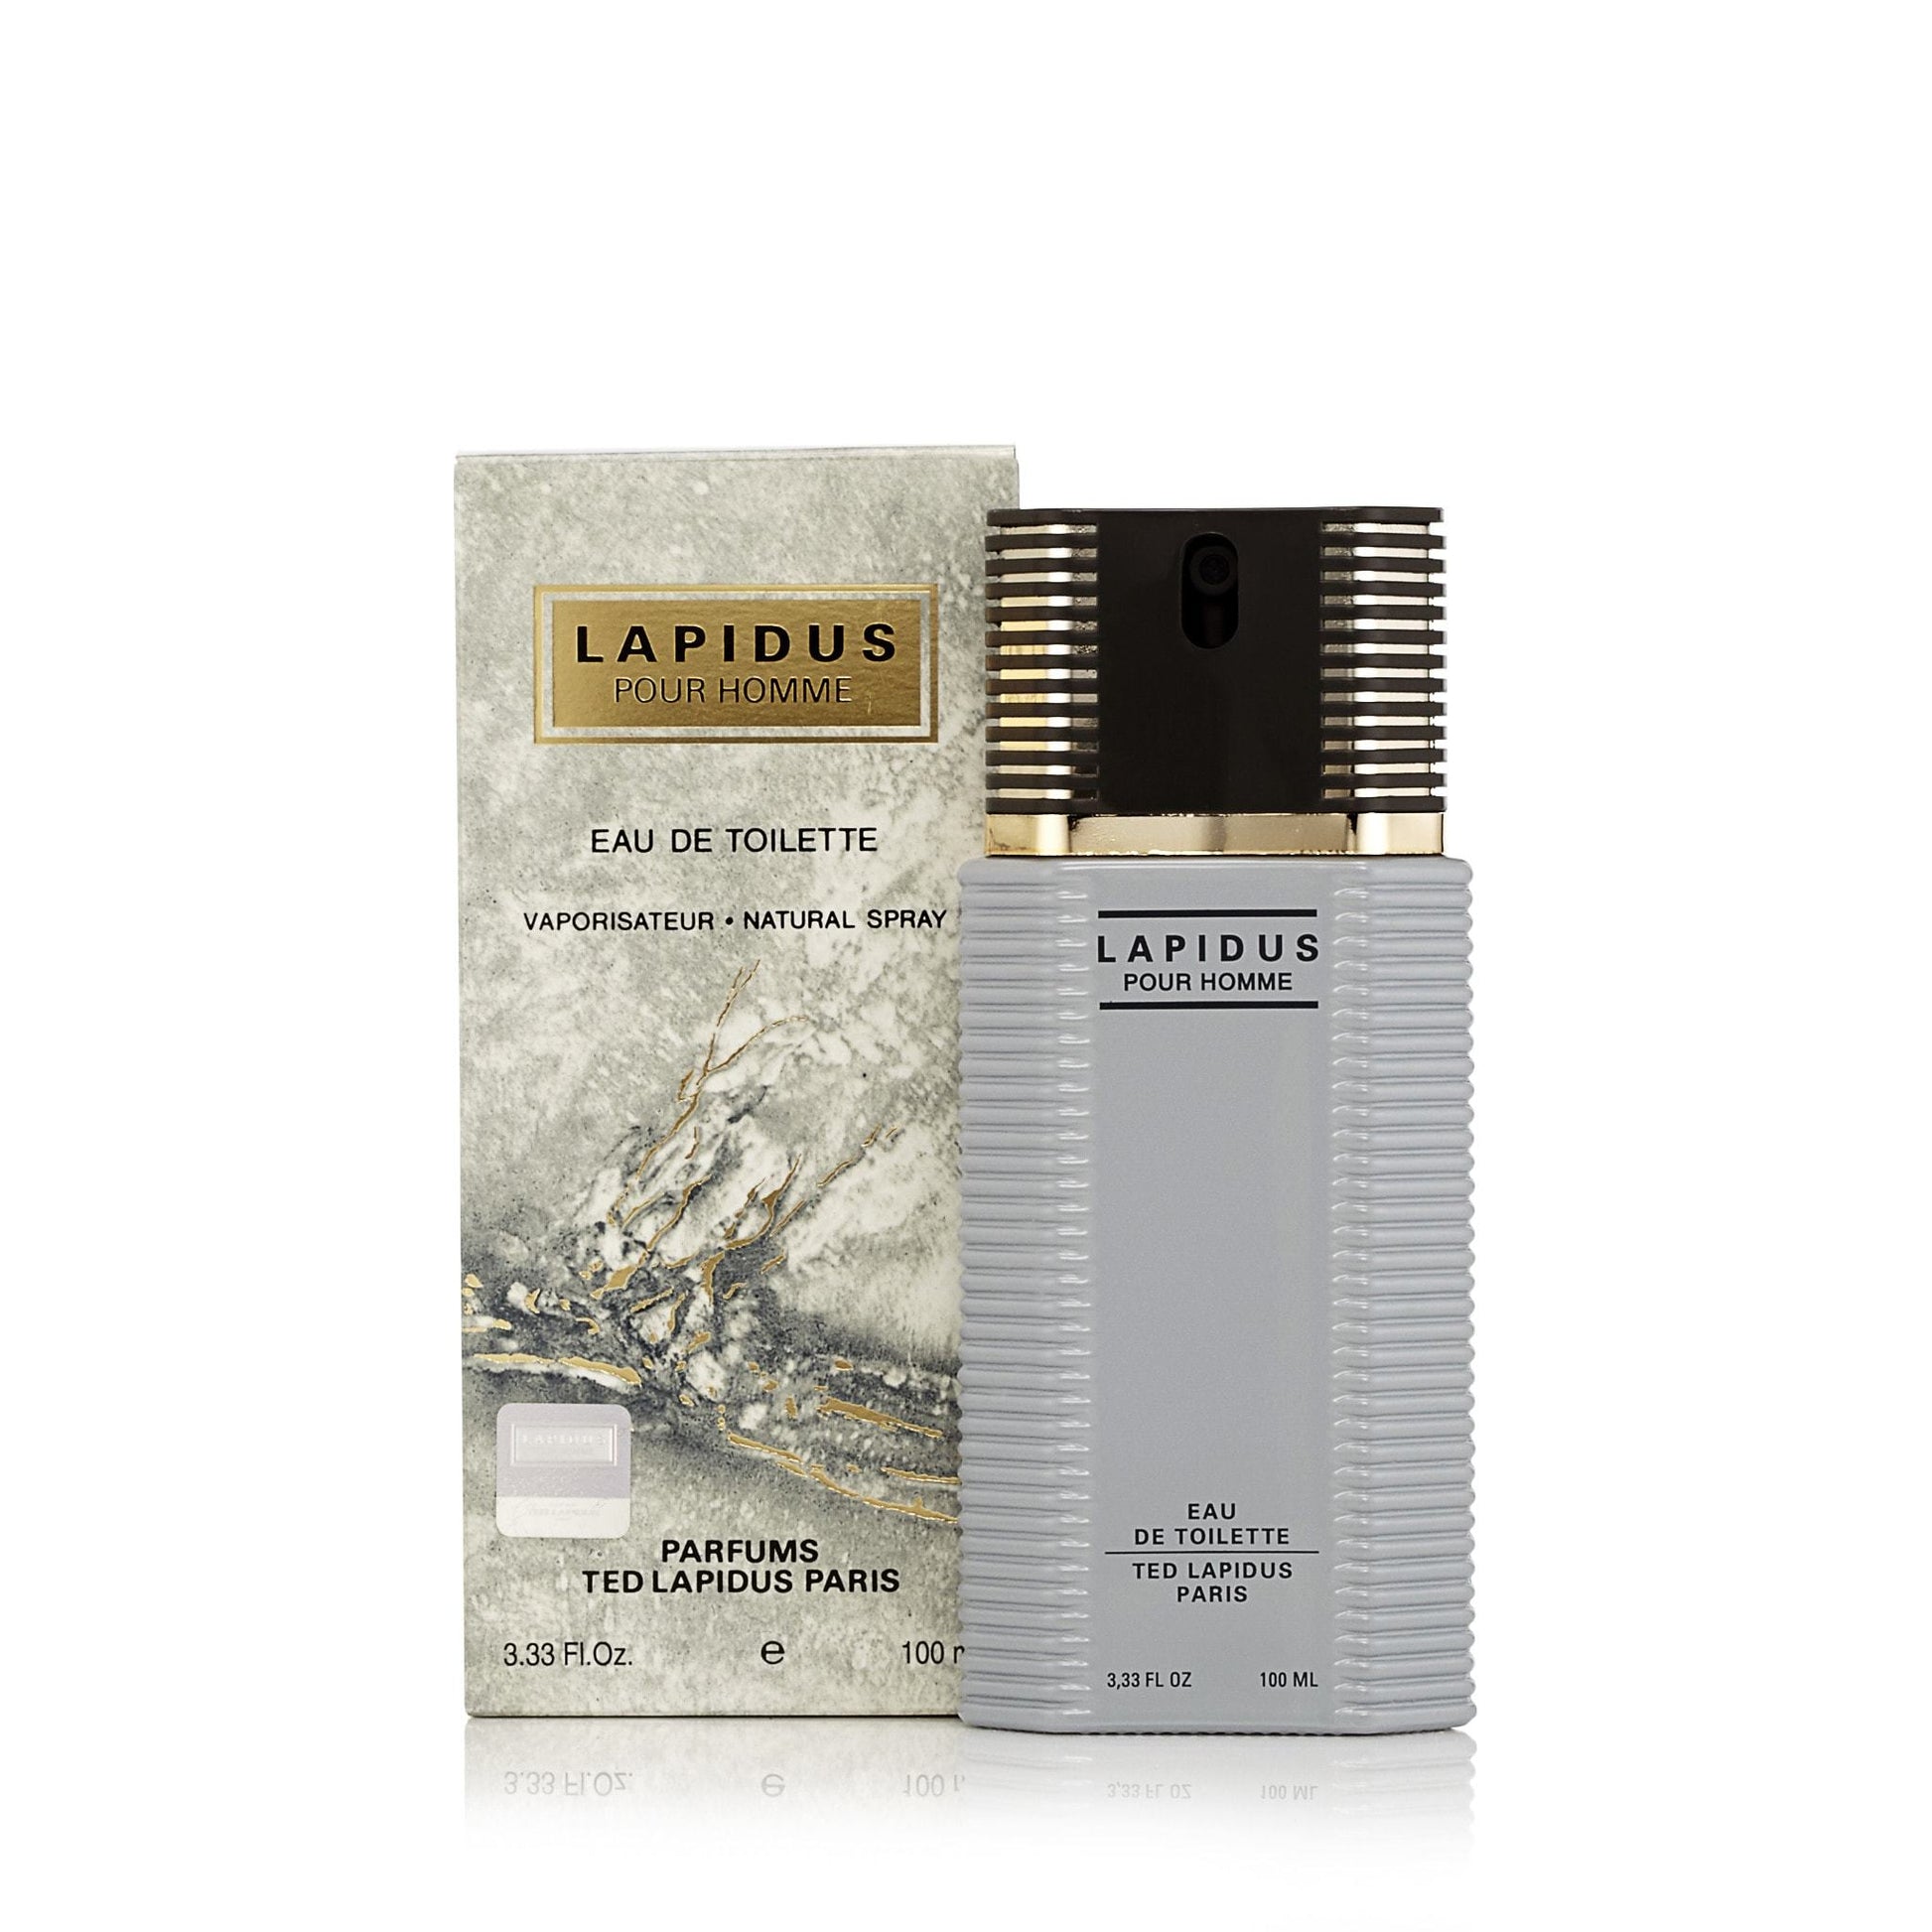 Lapidus Eau de Toilette Spray for Men by Ted Lapidus, Product image 2